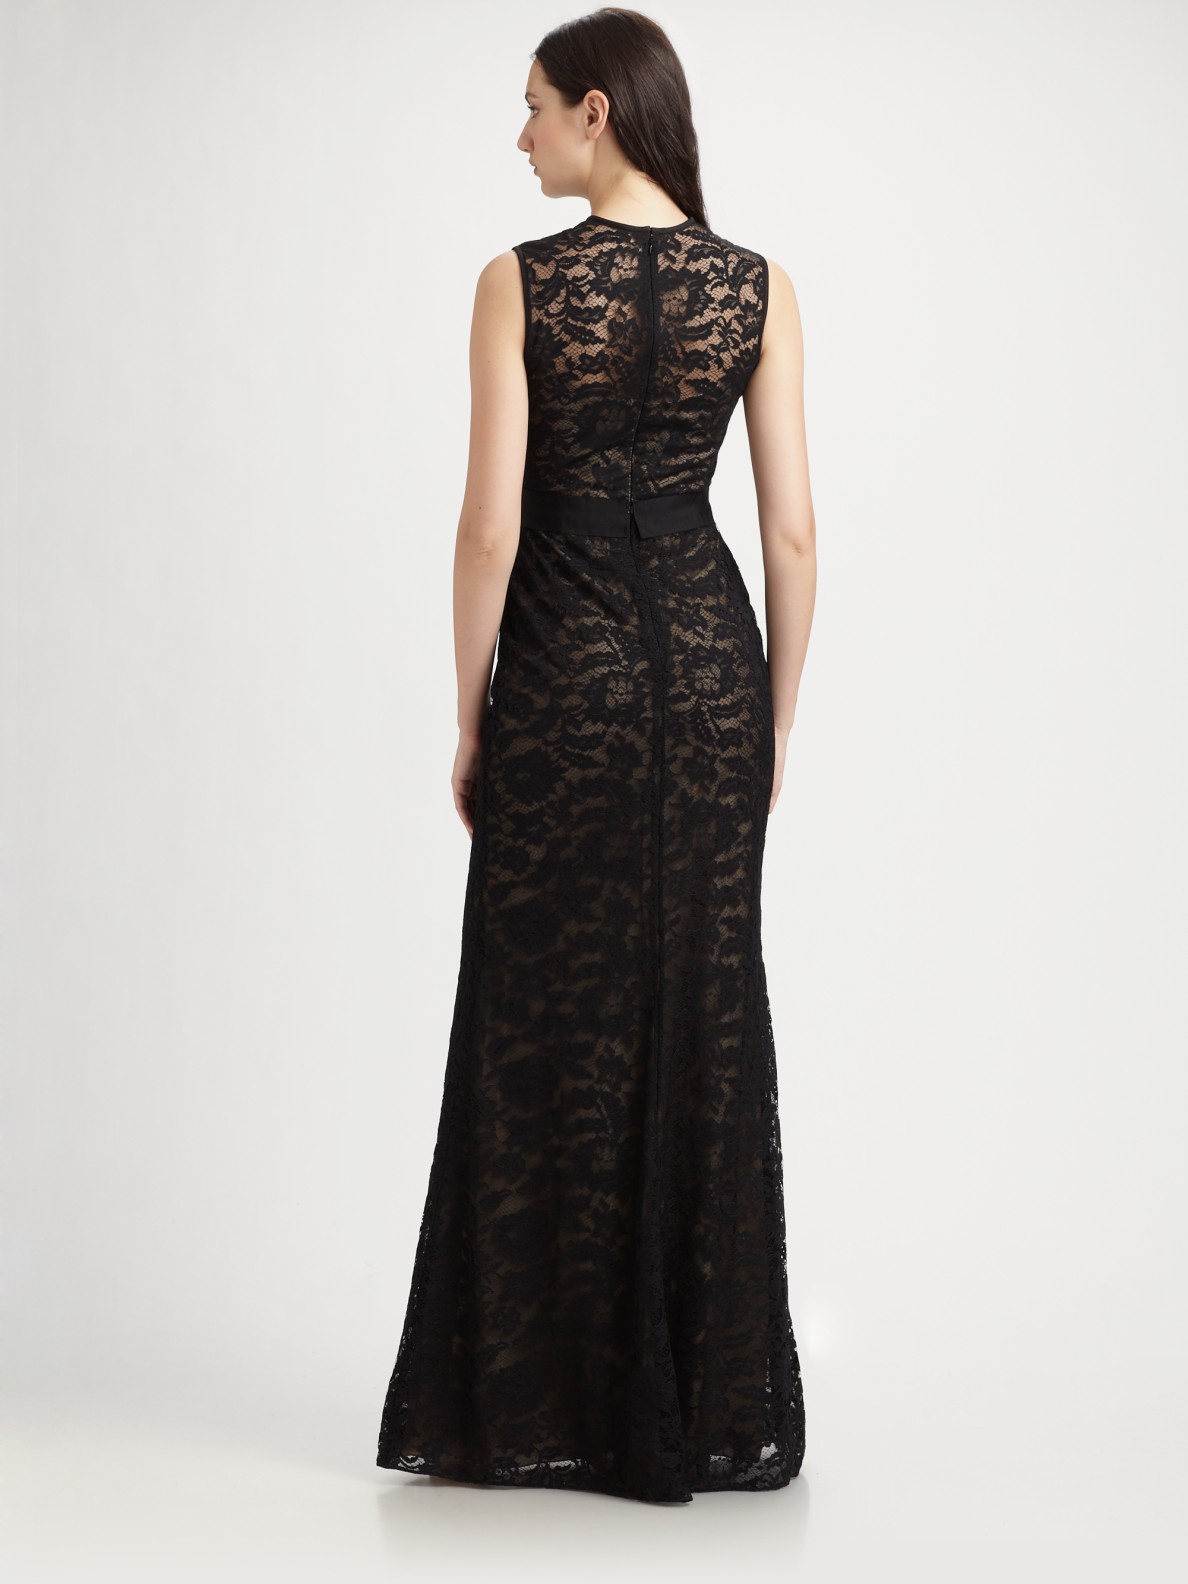 Lyst - Ml Monique Lhuillier Lace Gown in Black